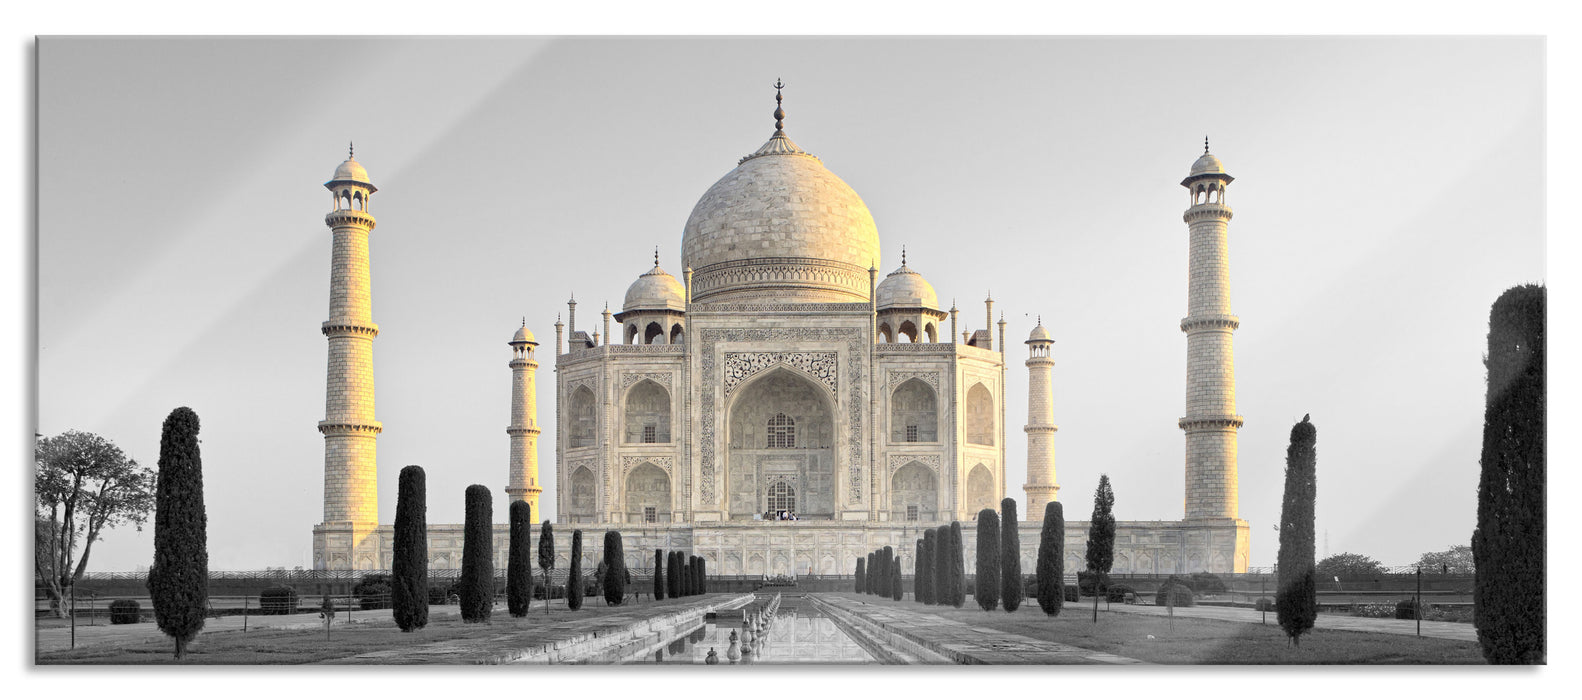 Taj Mahal in ruhiger Umgebung, Glasbild Panorama